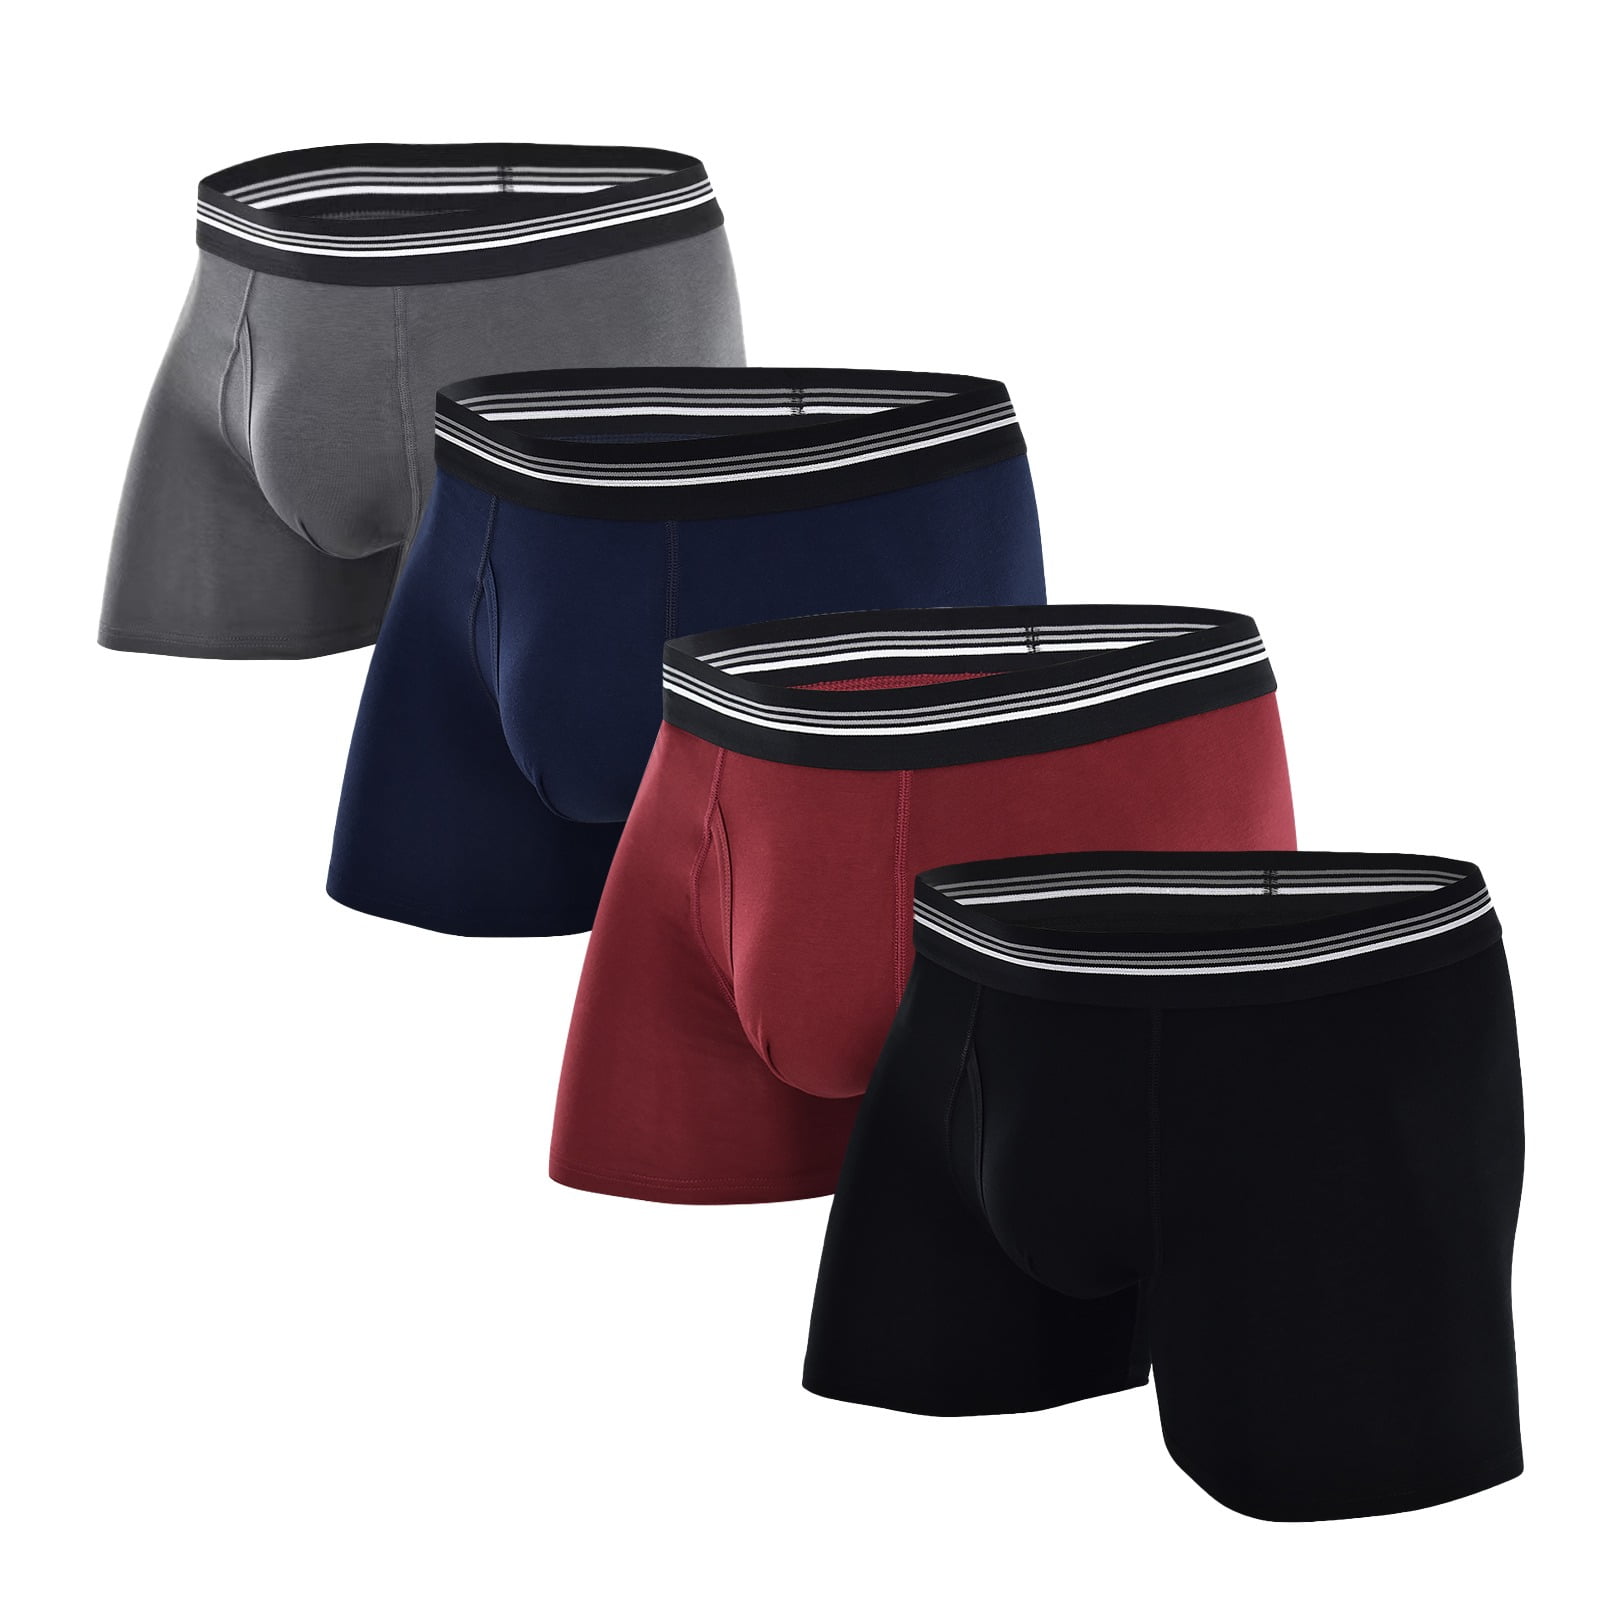 COOPLUS Men's Underwear Briefs Short Boxer Cotton Stretch Soft ...